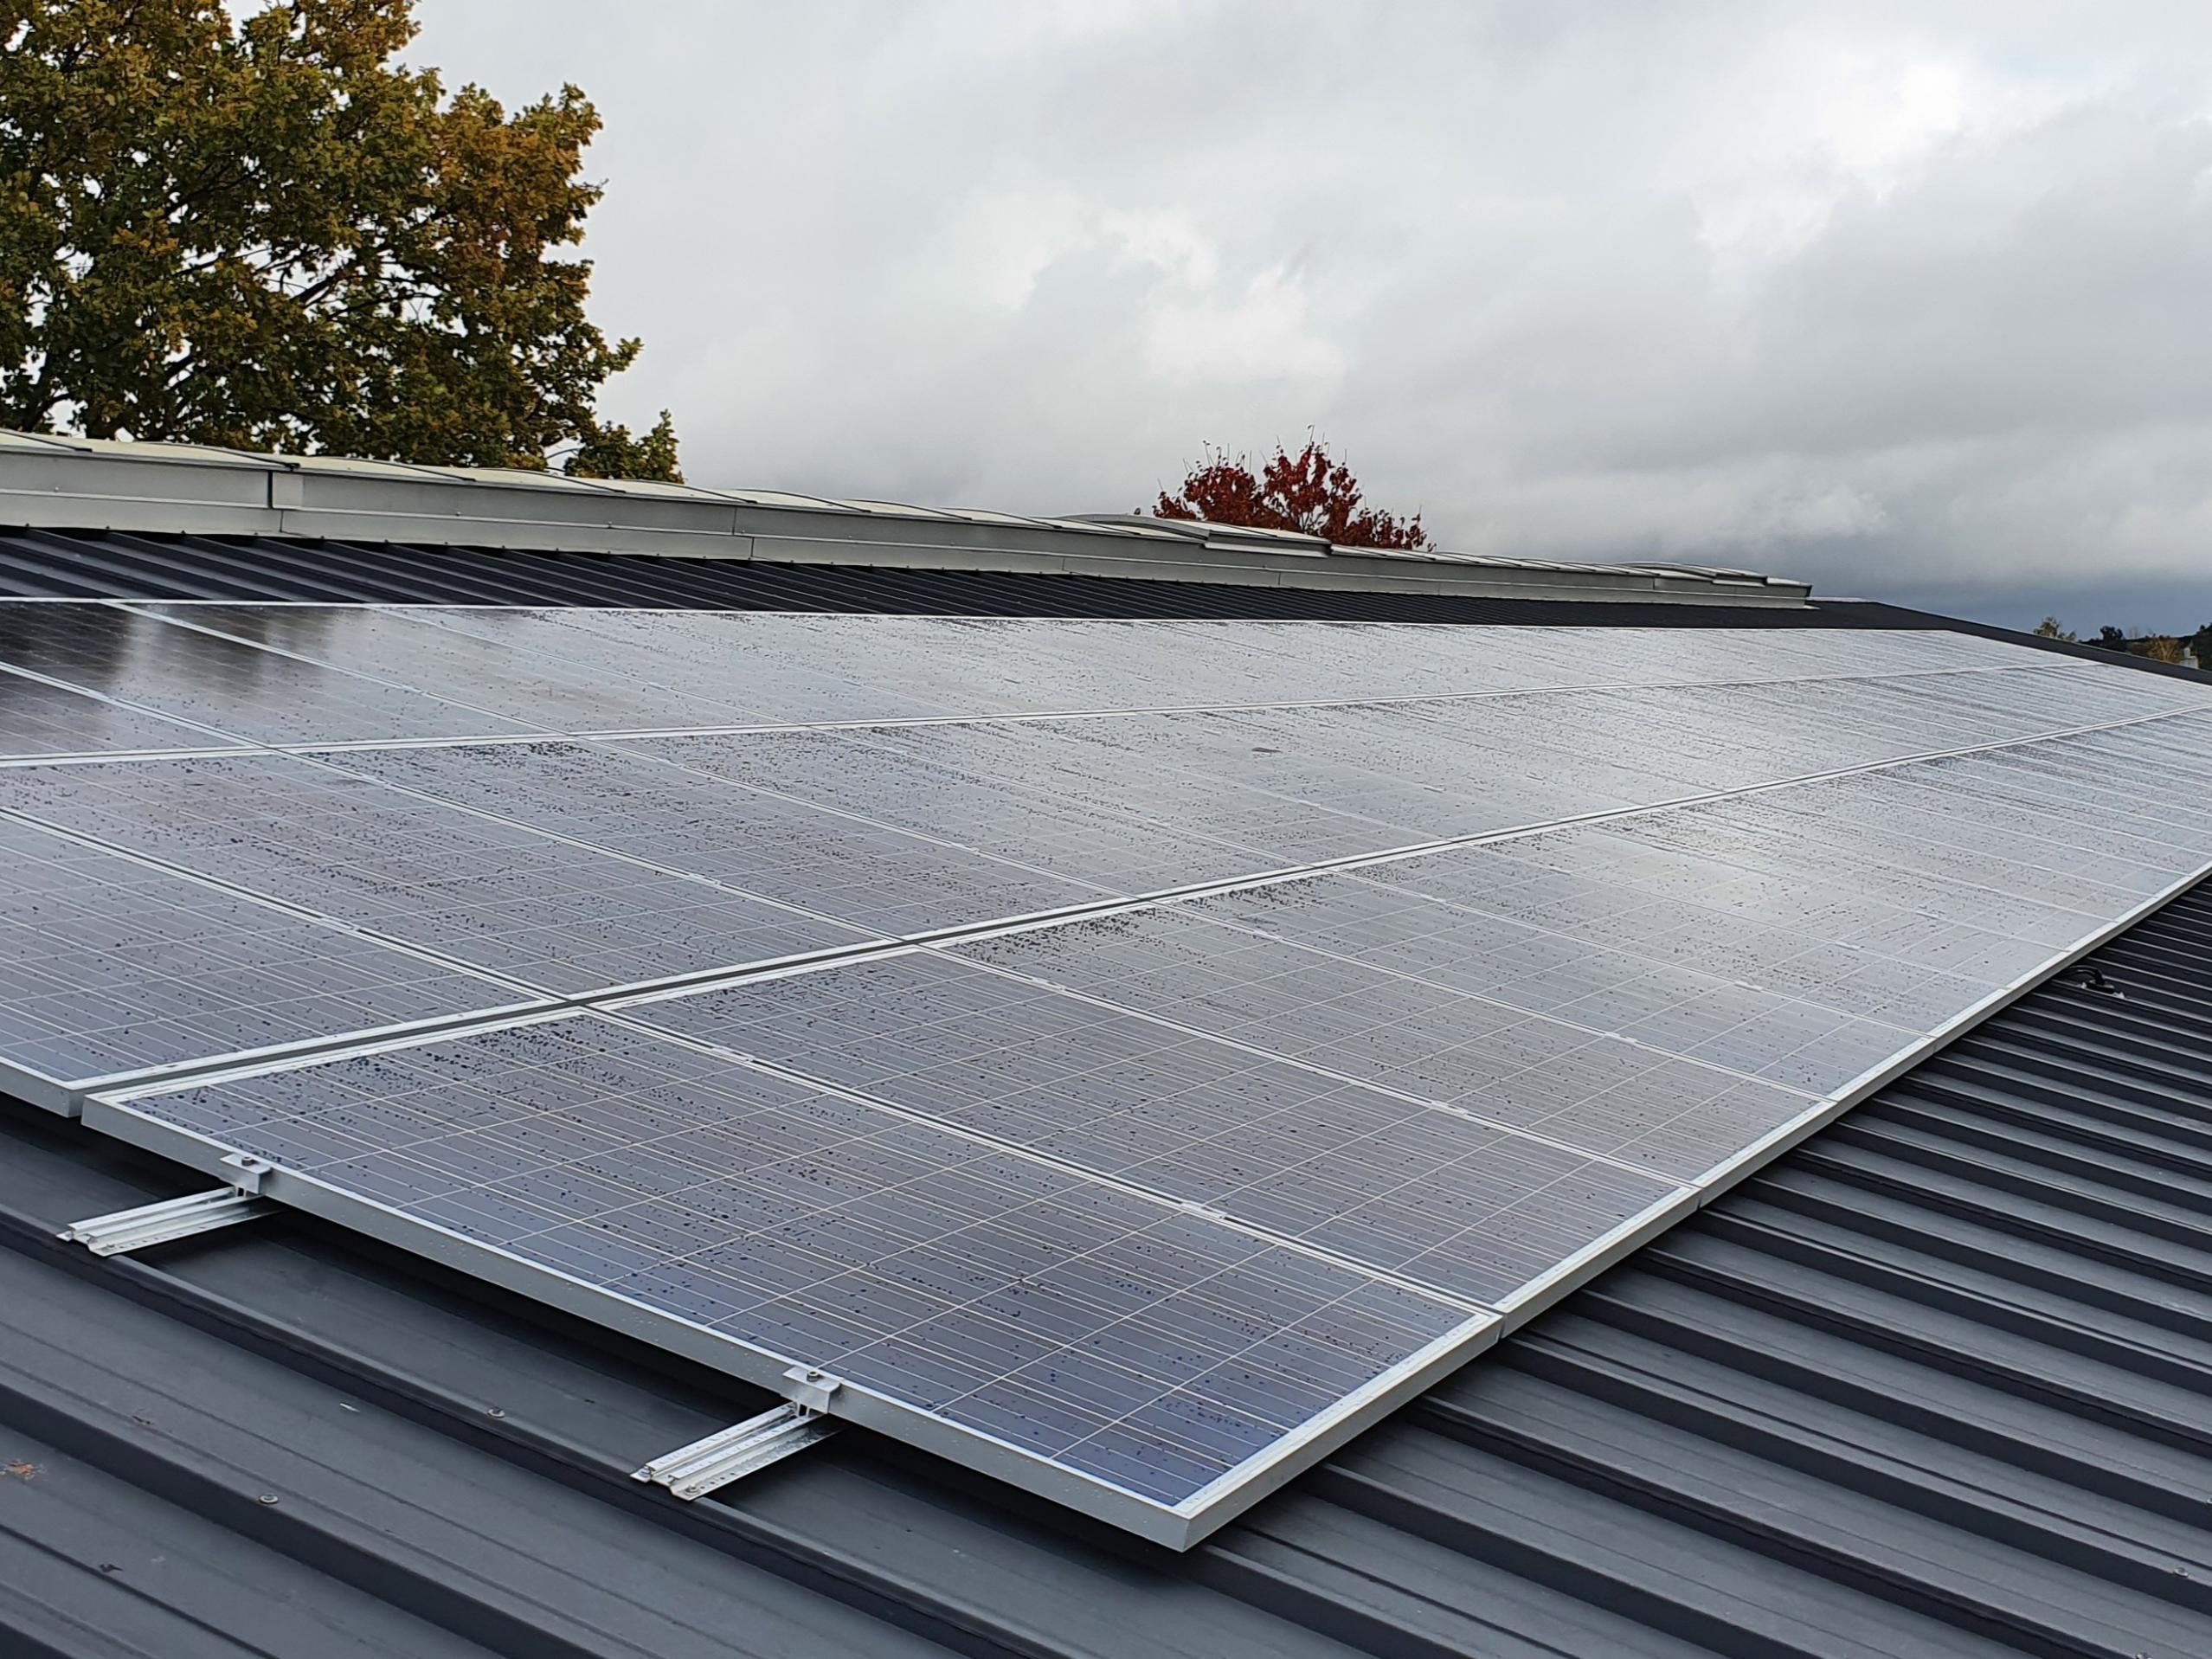 Filterhusets strøm kommer fra solceller på taget